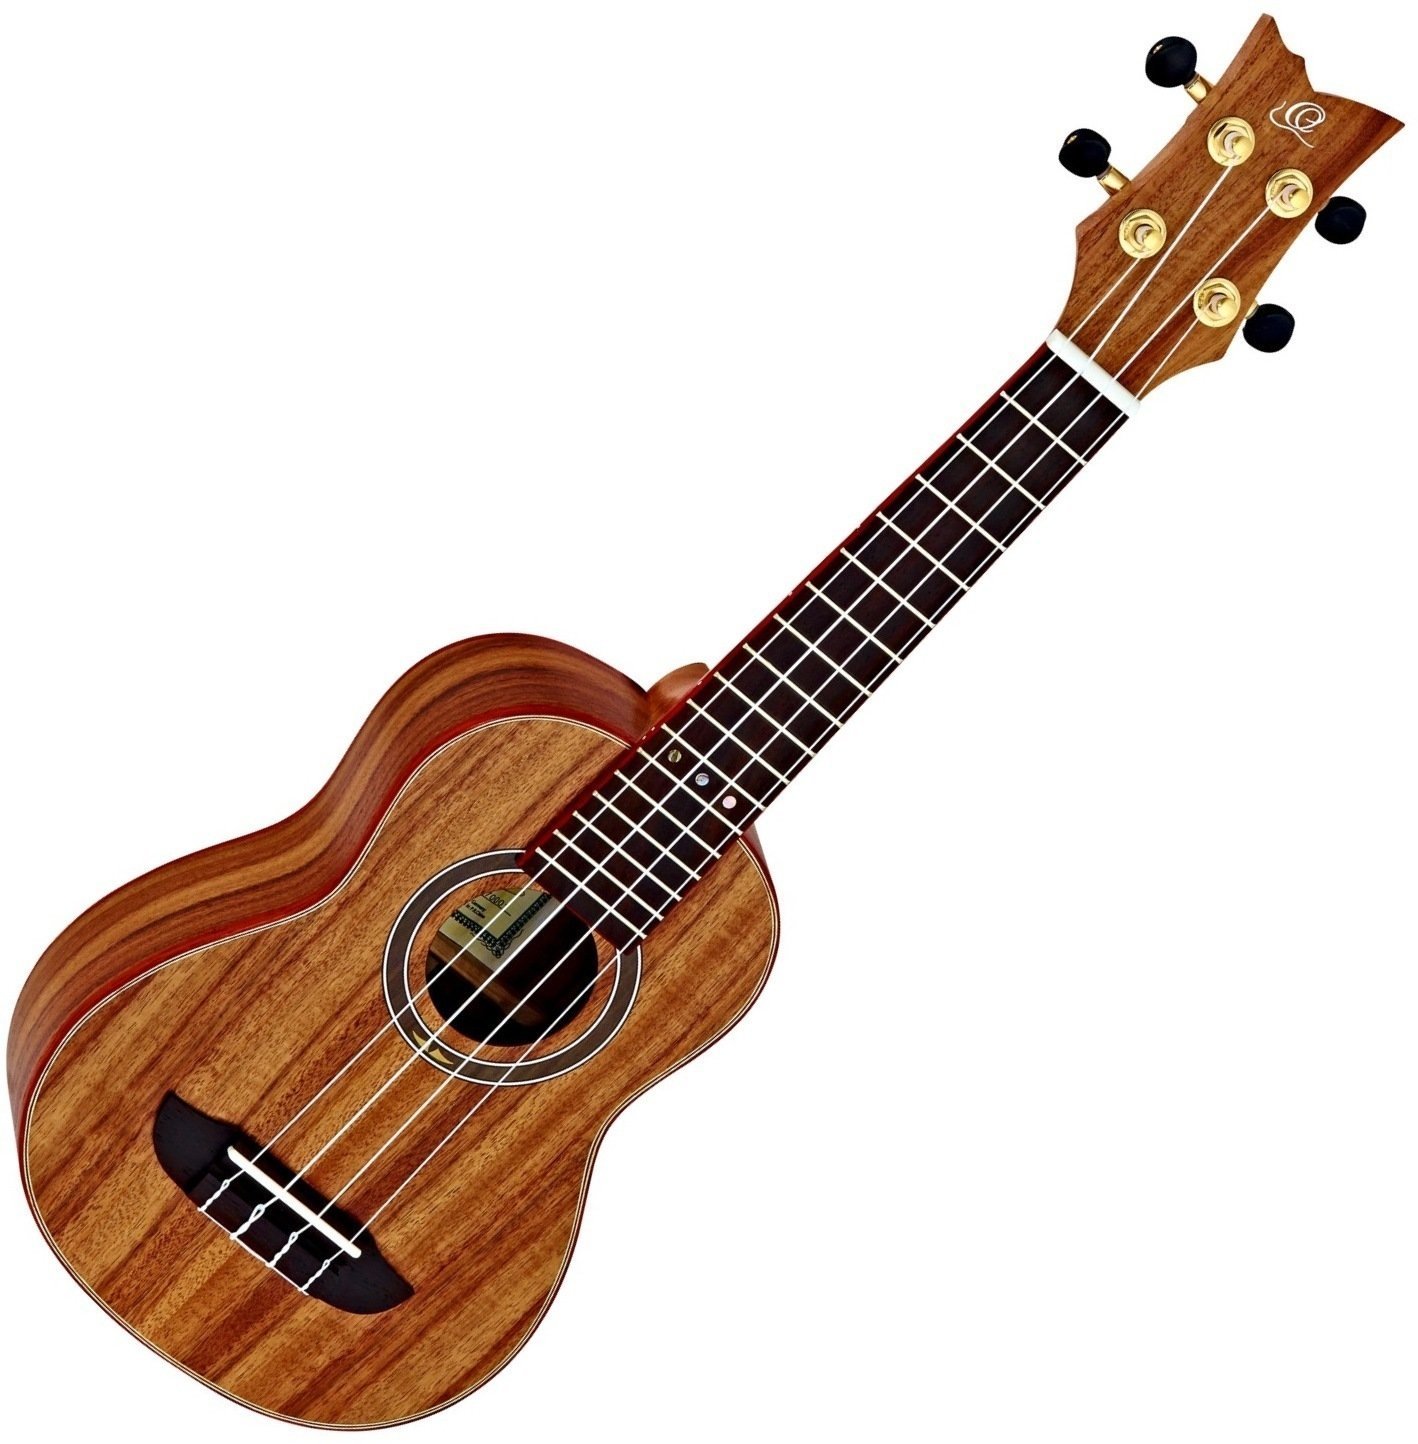 Sopran ukulele Ortega RUACA-SO Sopran ukulele Natural